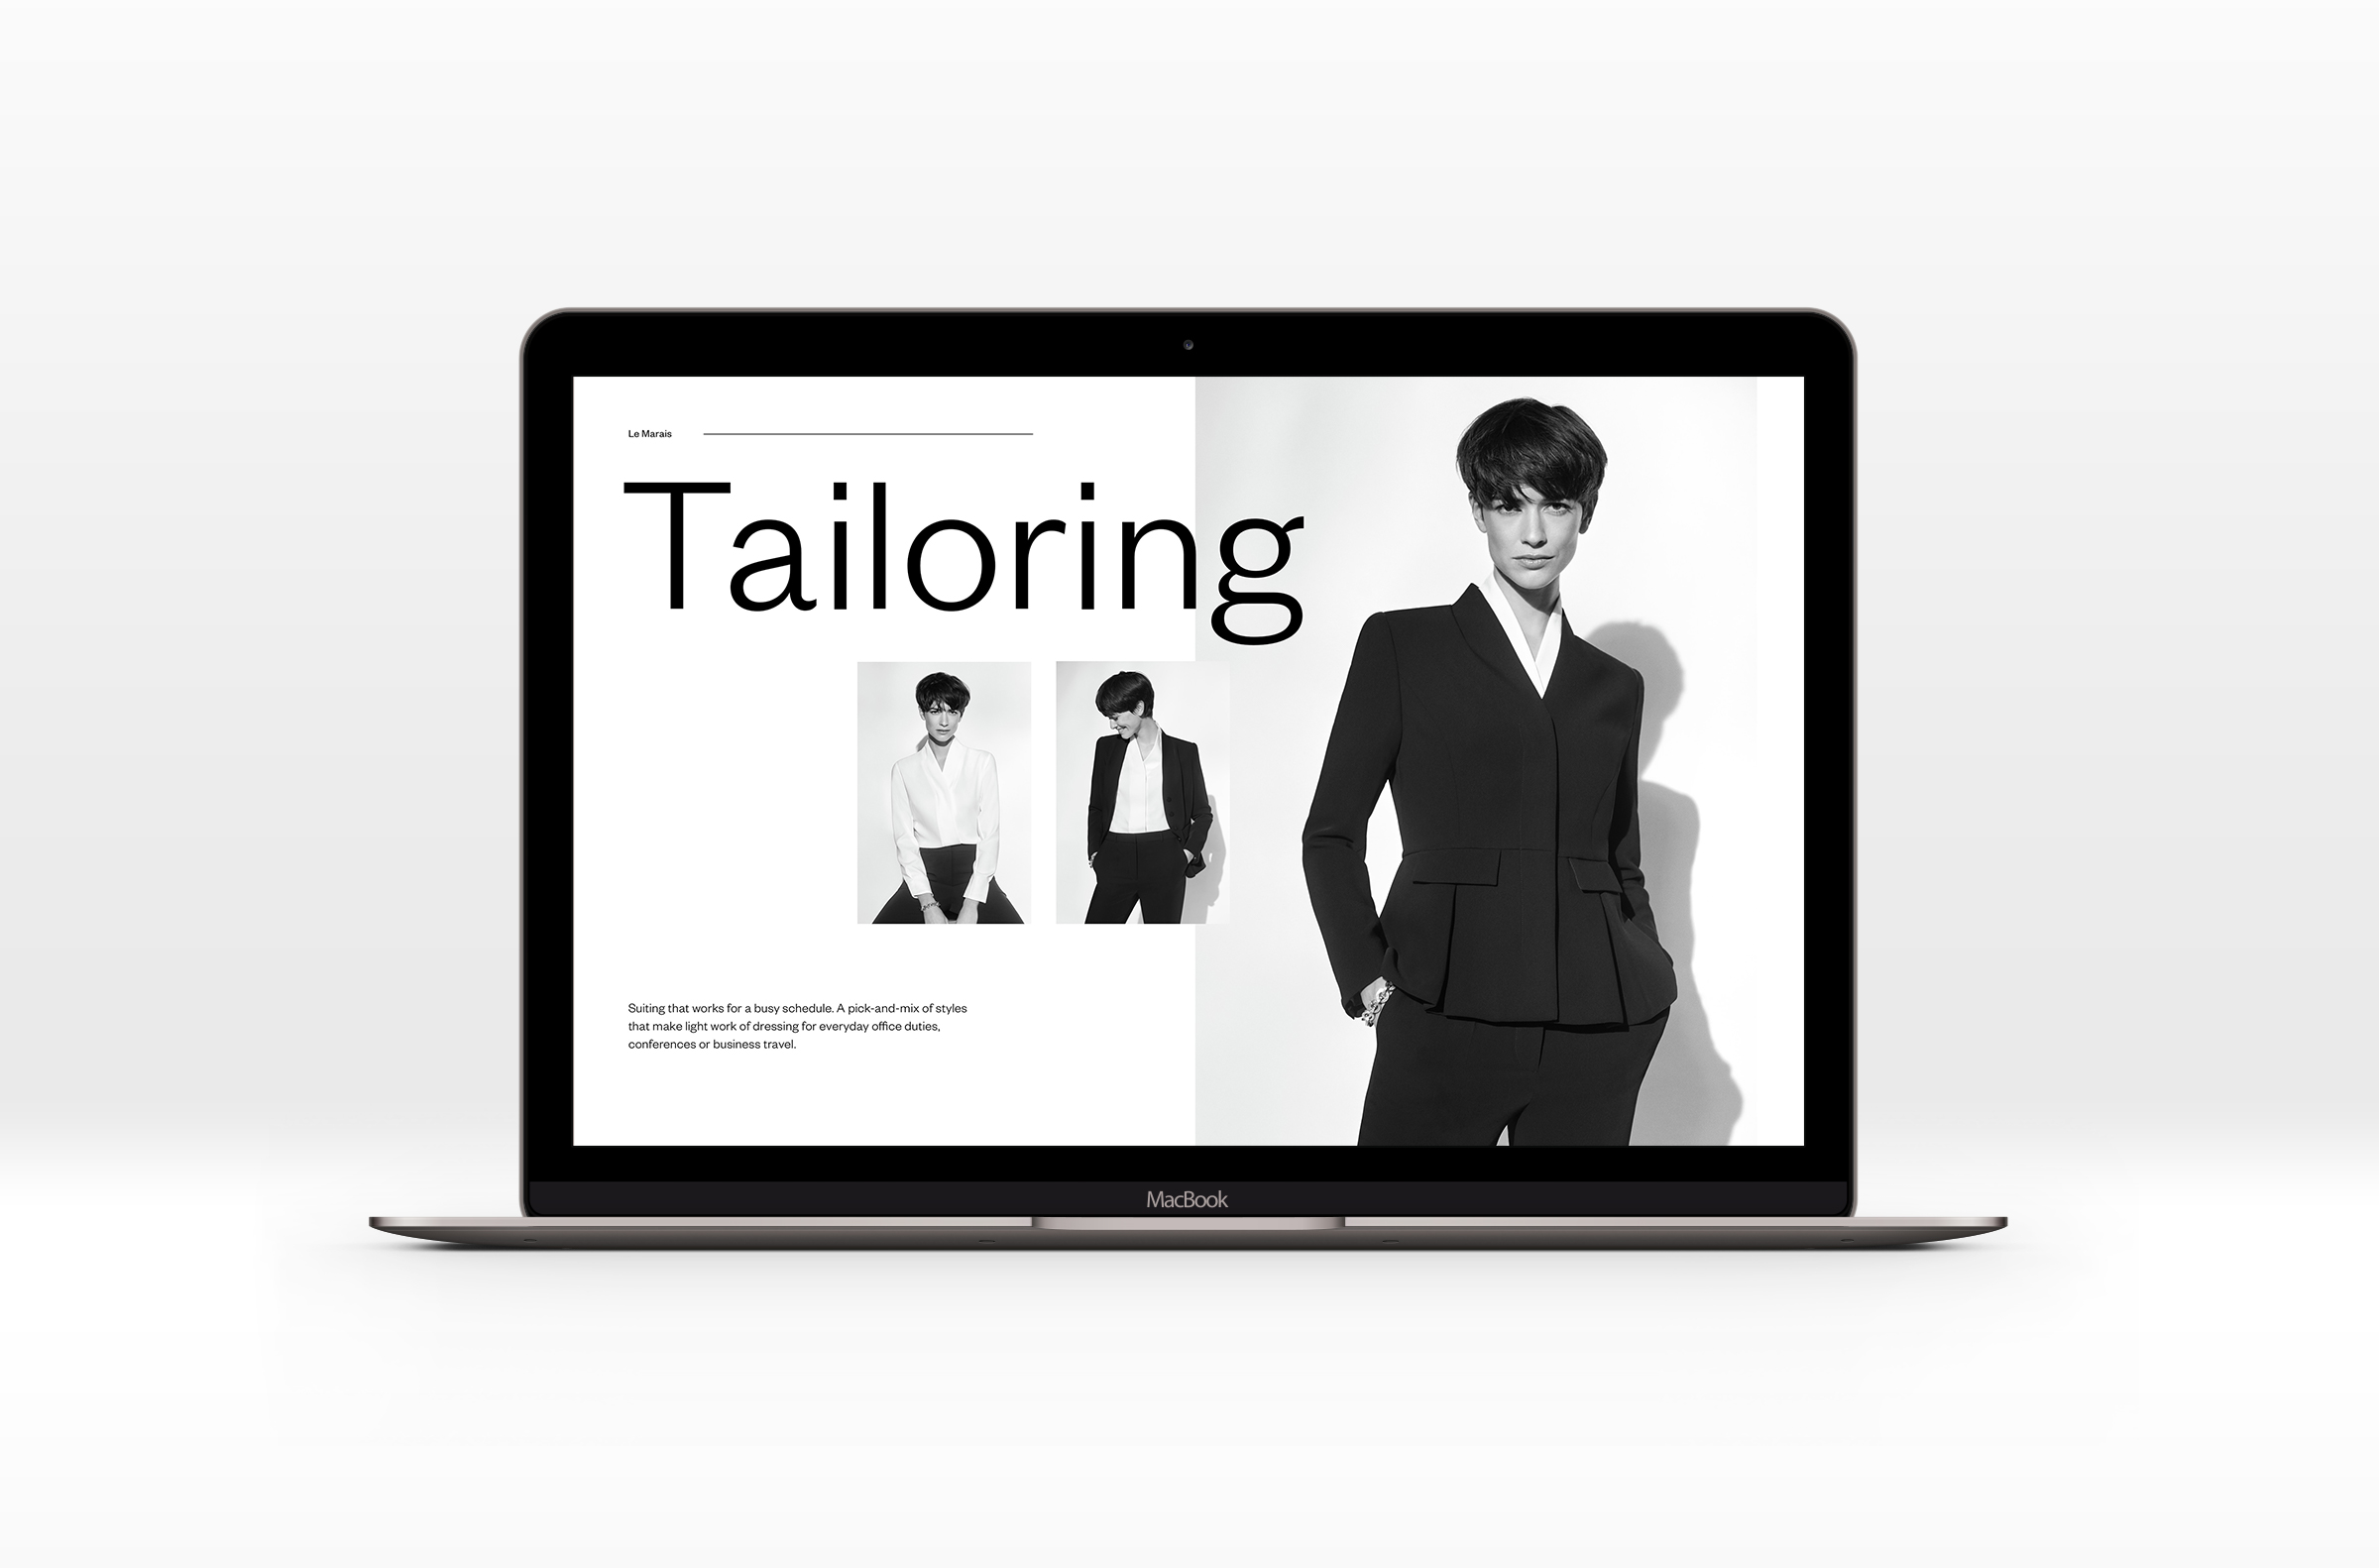 Tailoring_Macbook_Asset